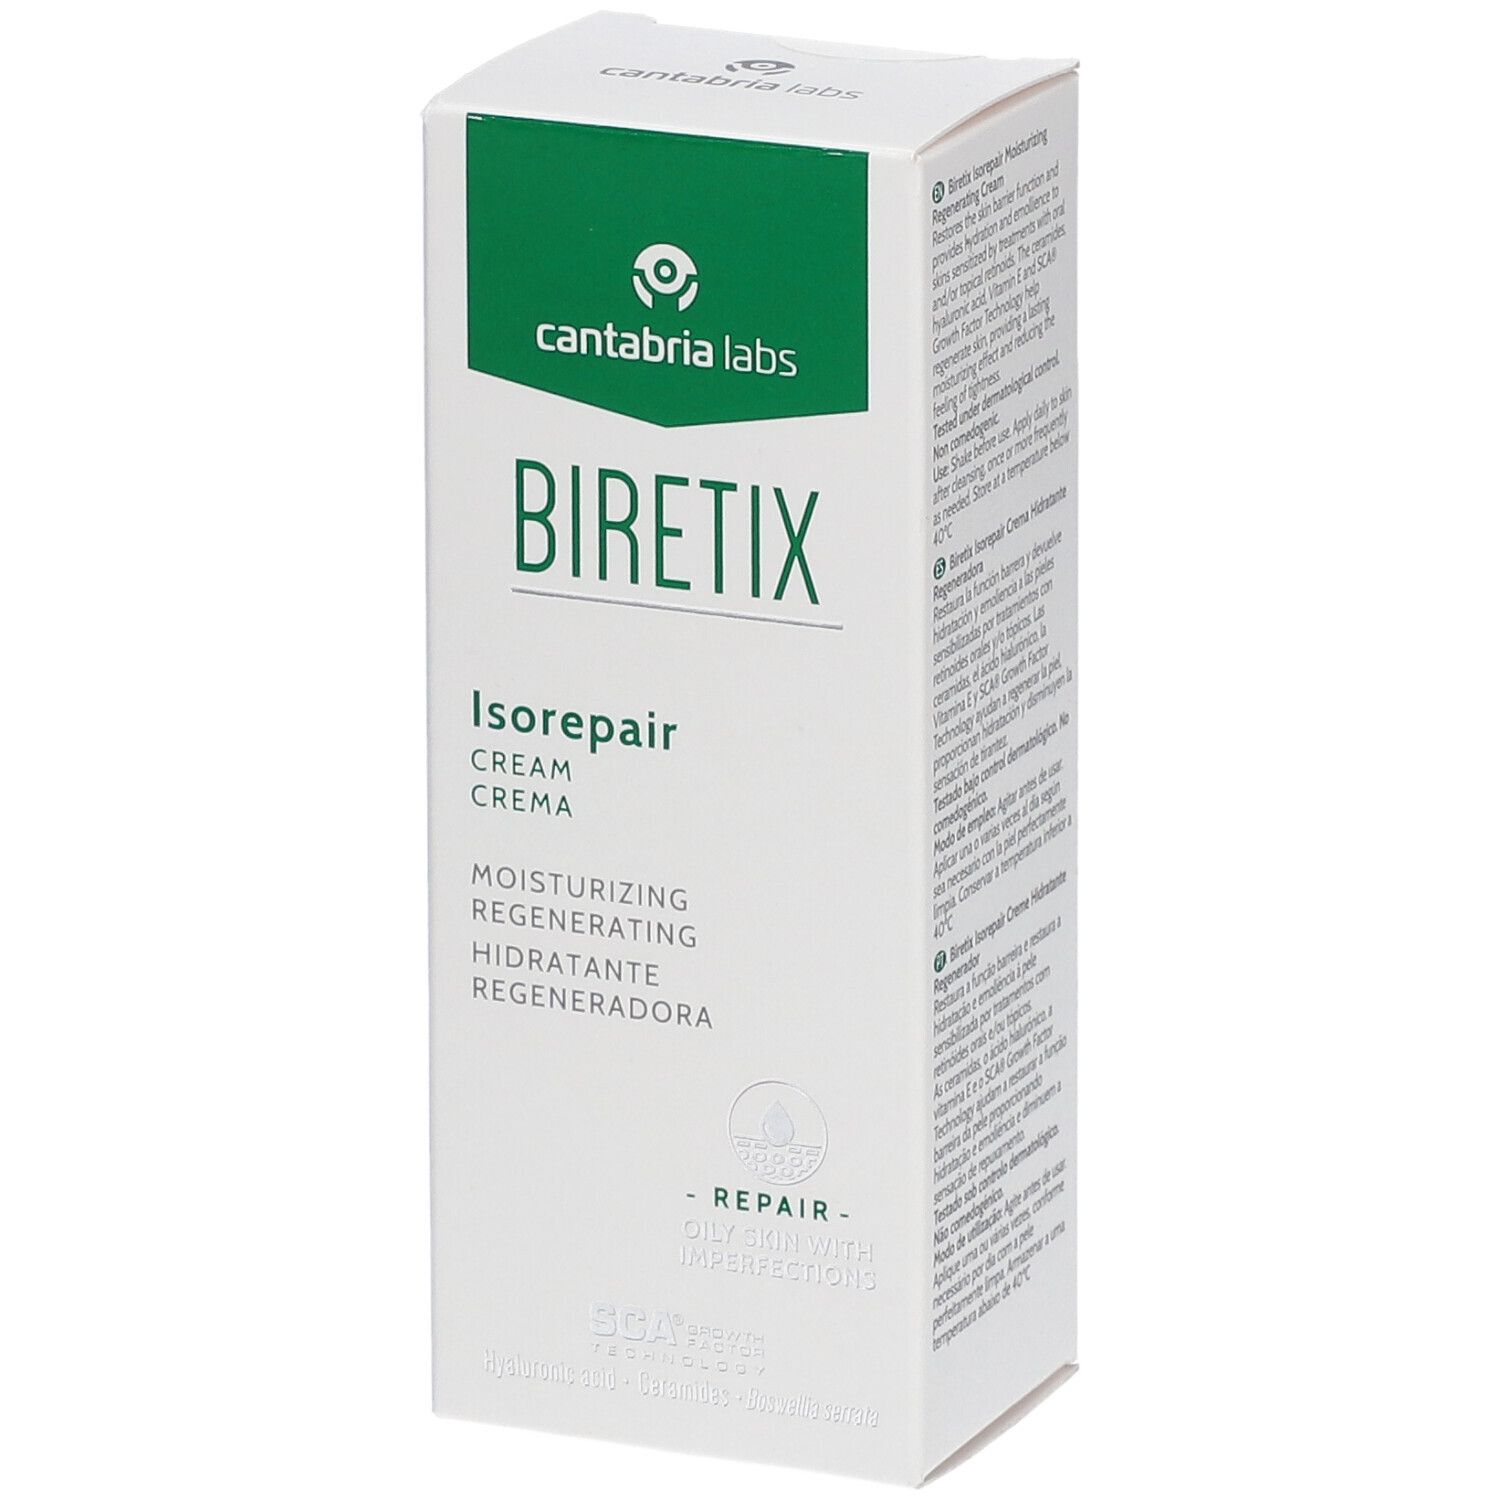 Biretix Isorepair